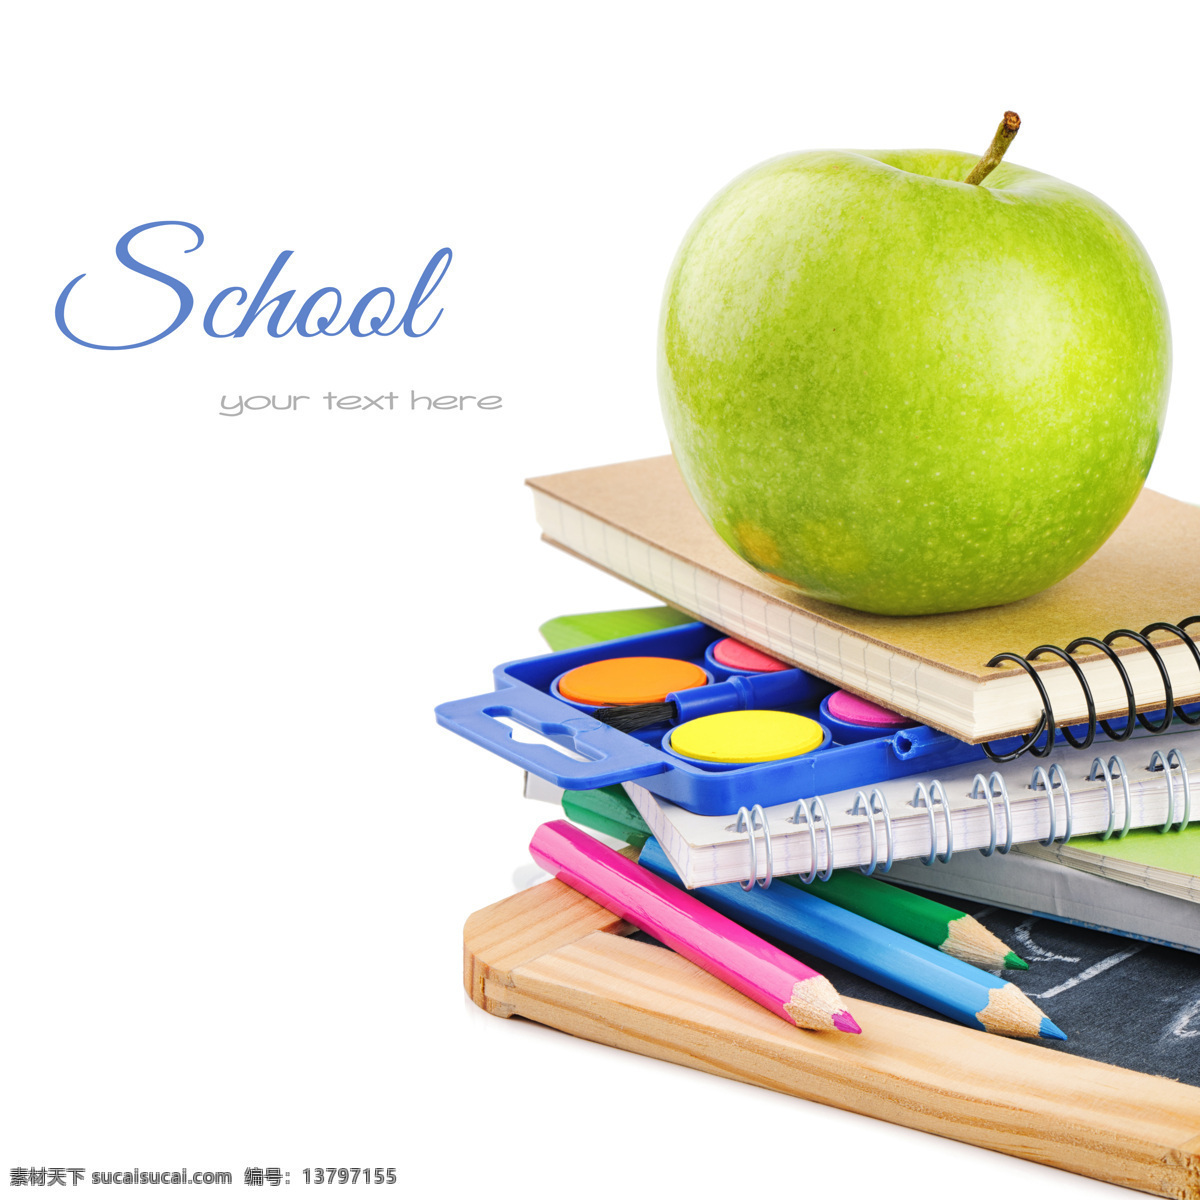 笔记本 上 青苹果 学习用品 学习教育 学校背景 调色板 铅笔 办公学习 生活百科